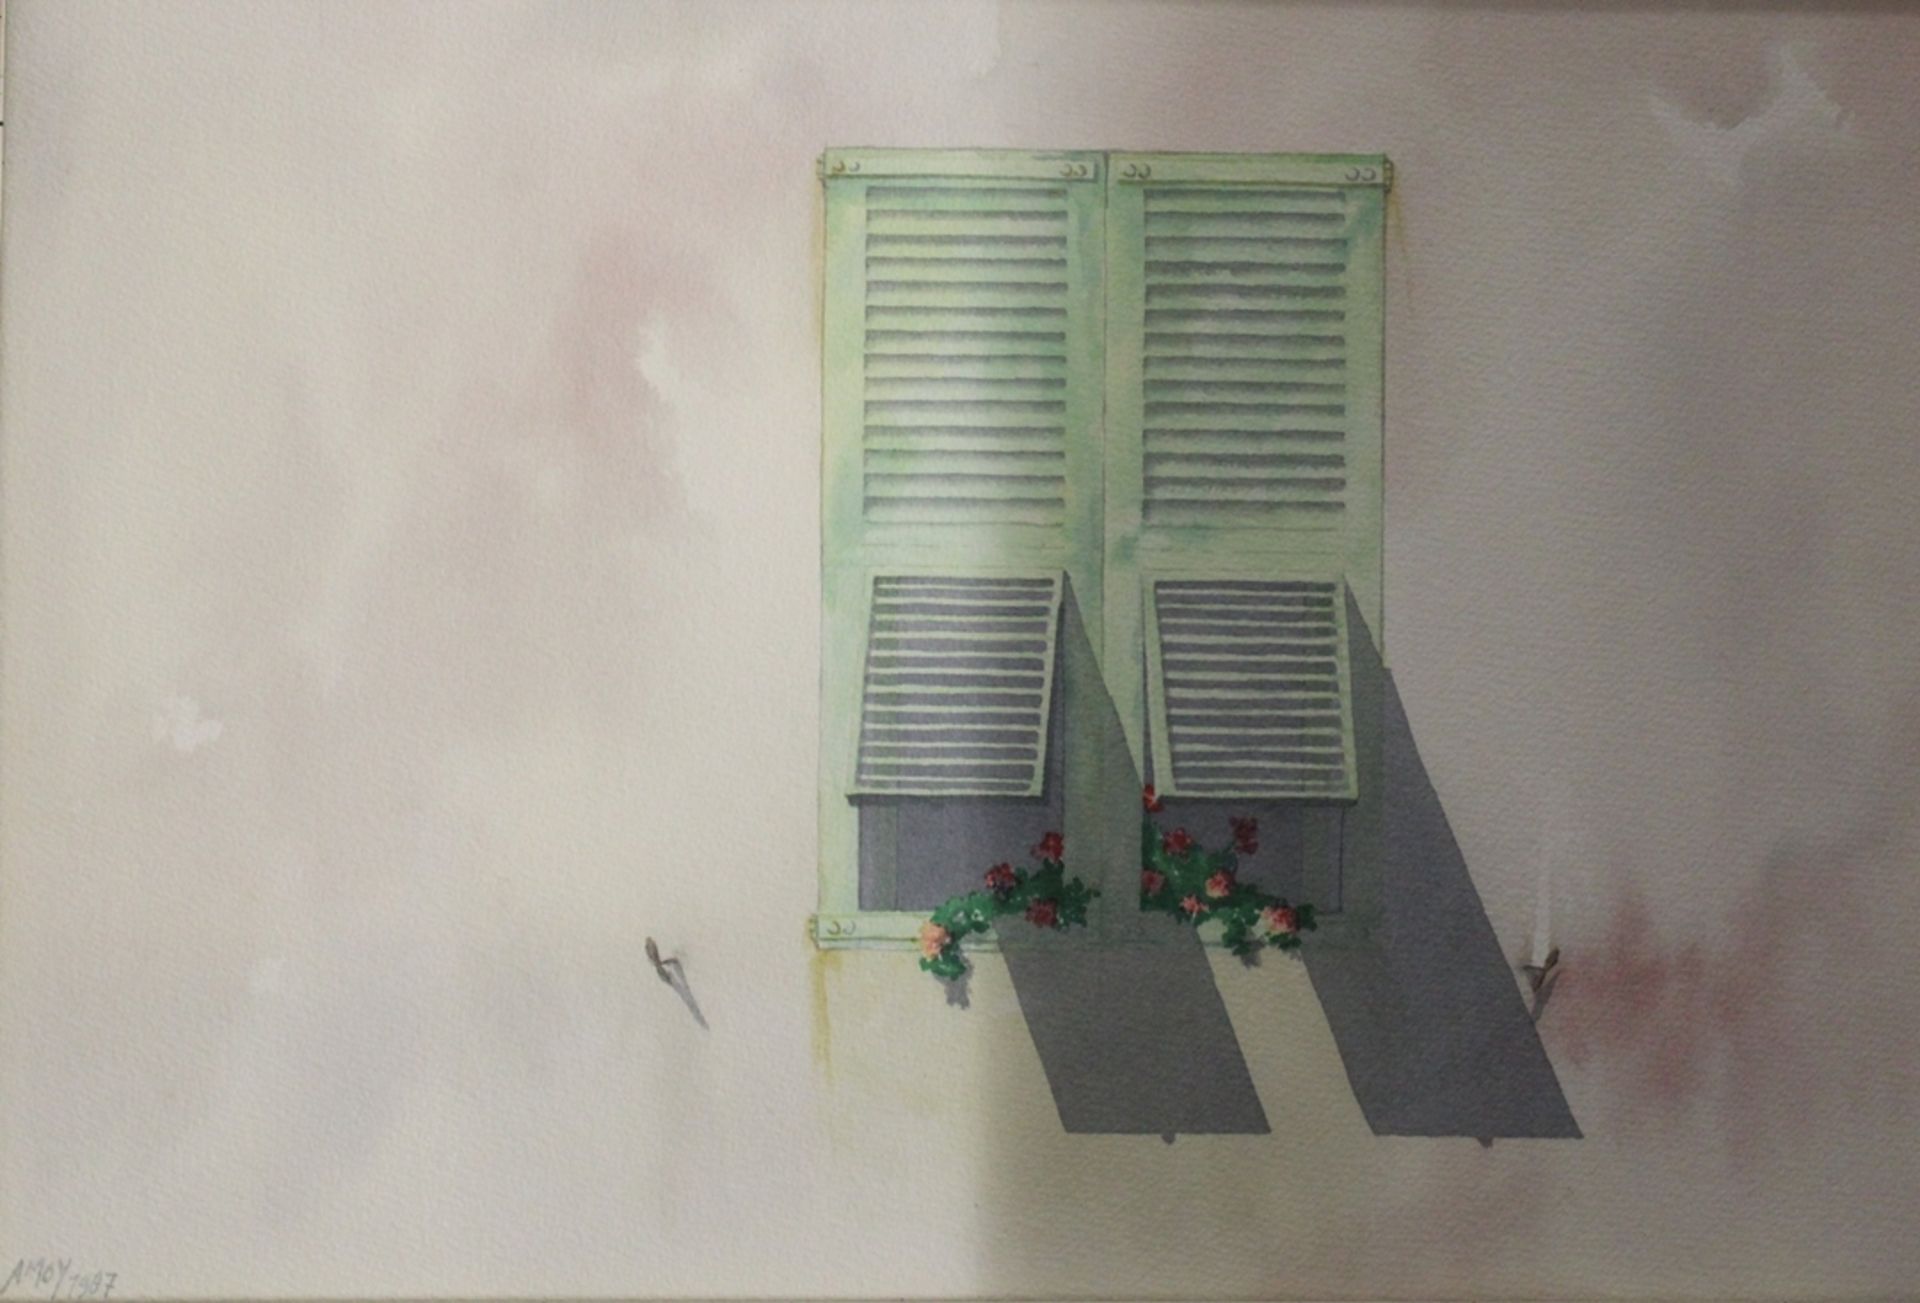 AMOY 1987, 2x Fensteransichten, Mischtechnik, je gerahmt/Glas, RG 39 x 54cm. - Bild 2 aus 5